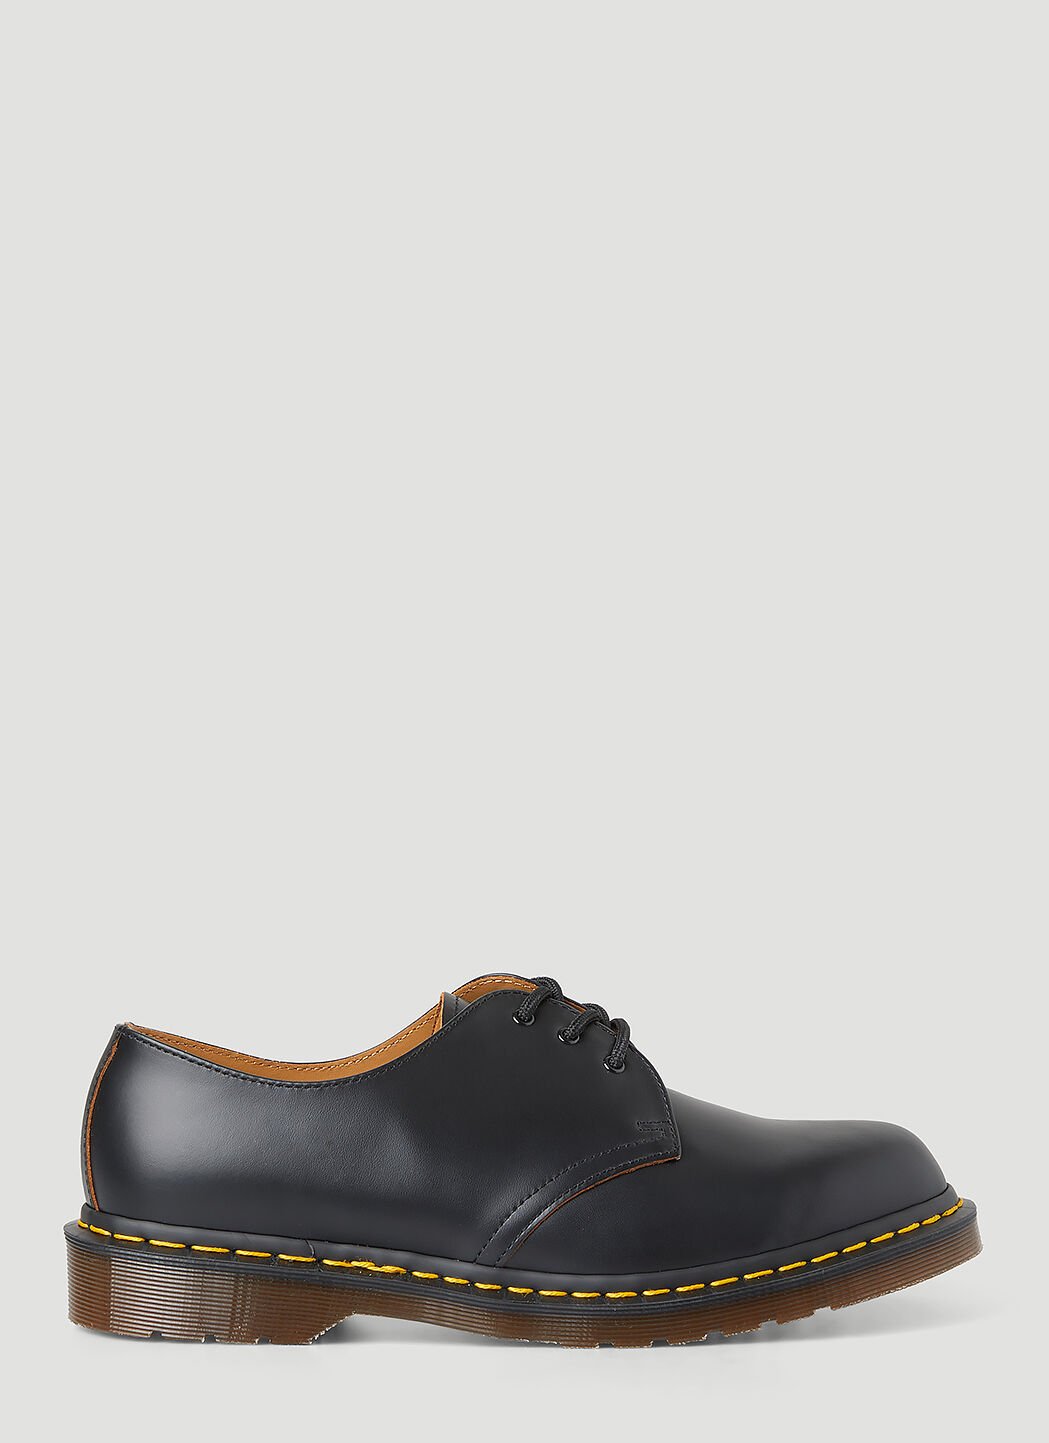 14XX BETA Vintage 1461 Tech Shoes Black drm0355001